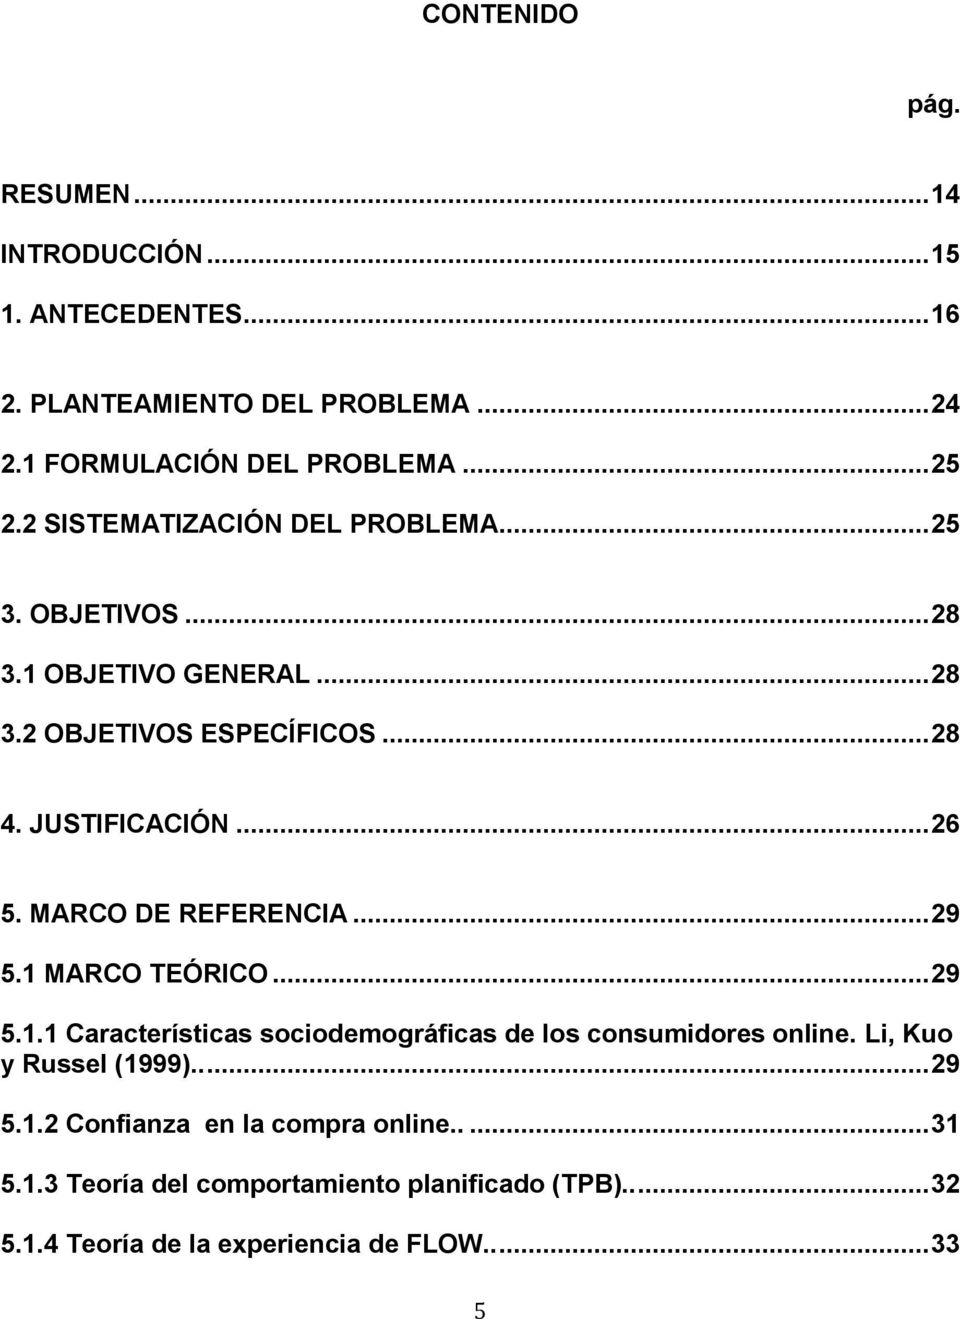 MARCO DE REFERENCIA... 29 5.1 MARCO TEÓRICO... 29 5.1.1 Características sociodemográficas de los consumidores online. Li, Kuo y Russel (1999).